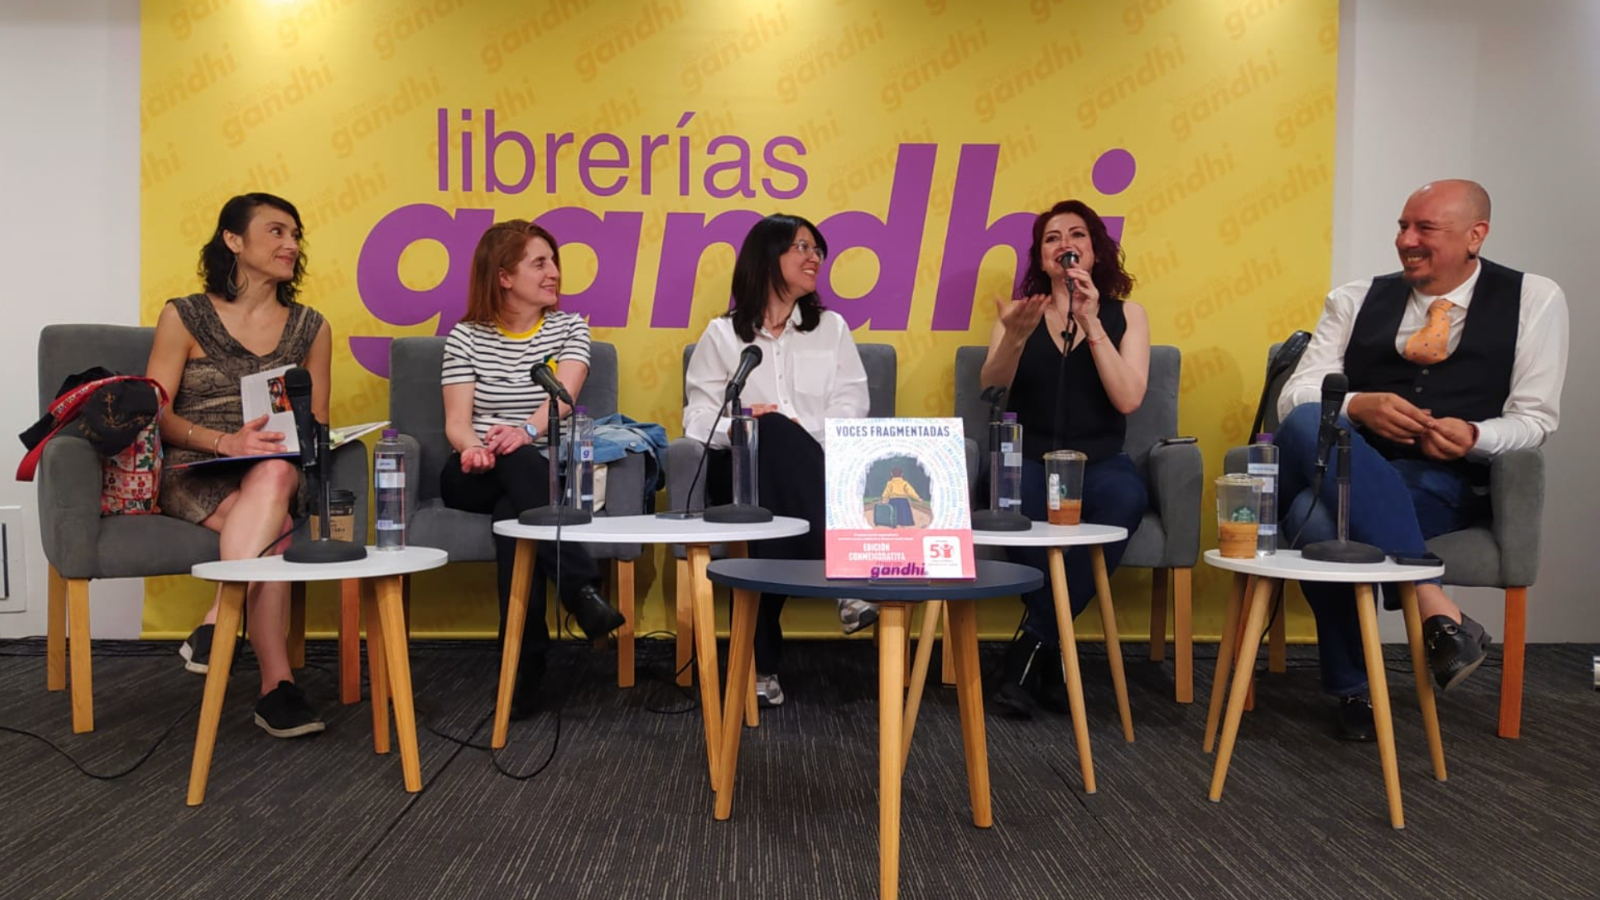 Save the Children, Hachette Livre México y librerías Gandhi presentan el libro “Voces Fragmentadas”